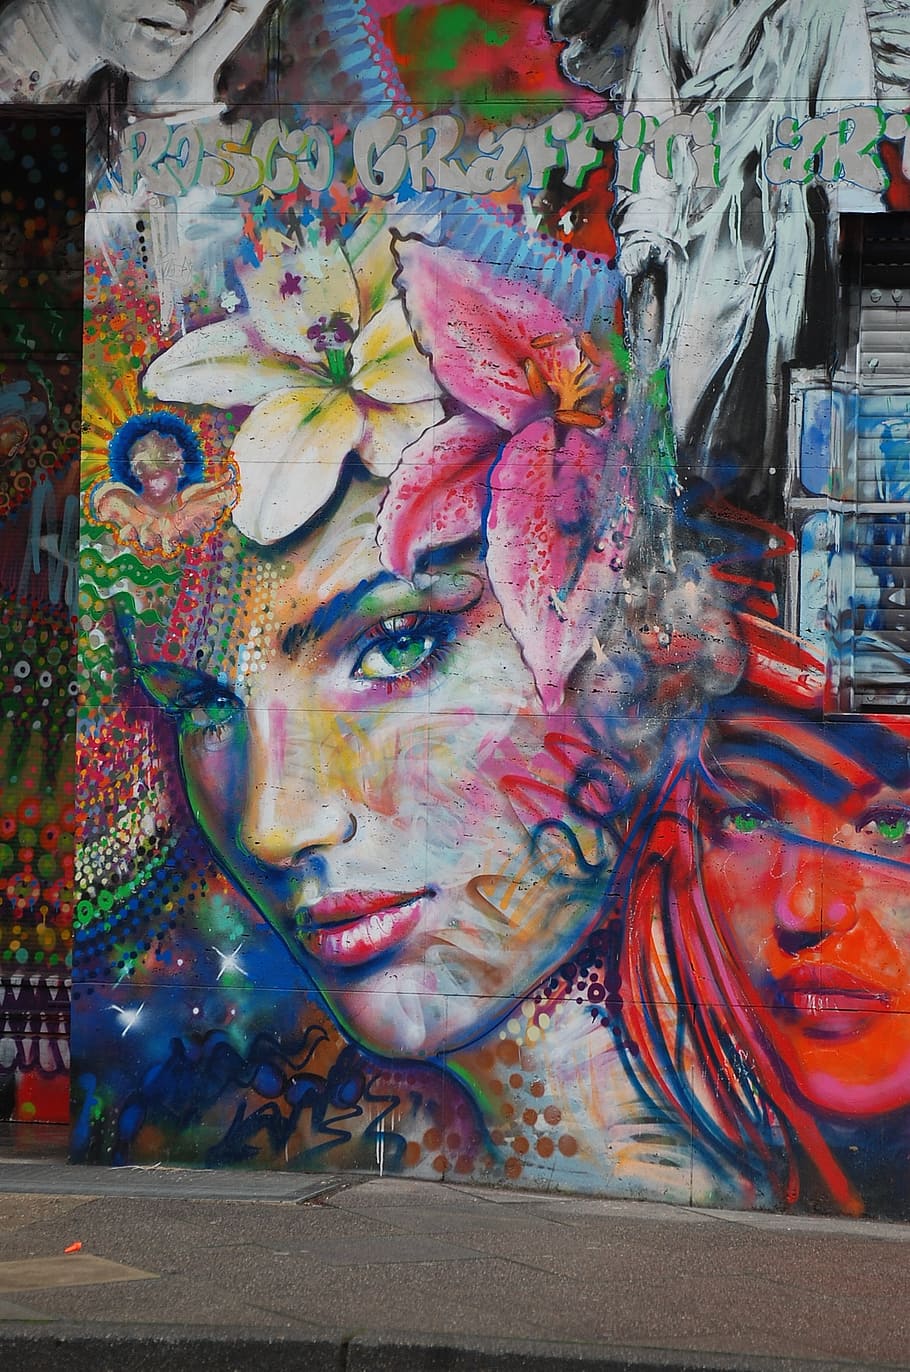 foto, pared de graffiti, graffiti, mujer, arte callejero, cara, pared, retrato, aerosol, fantasía